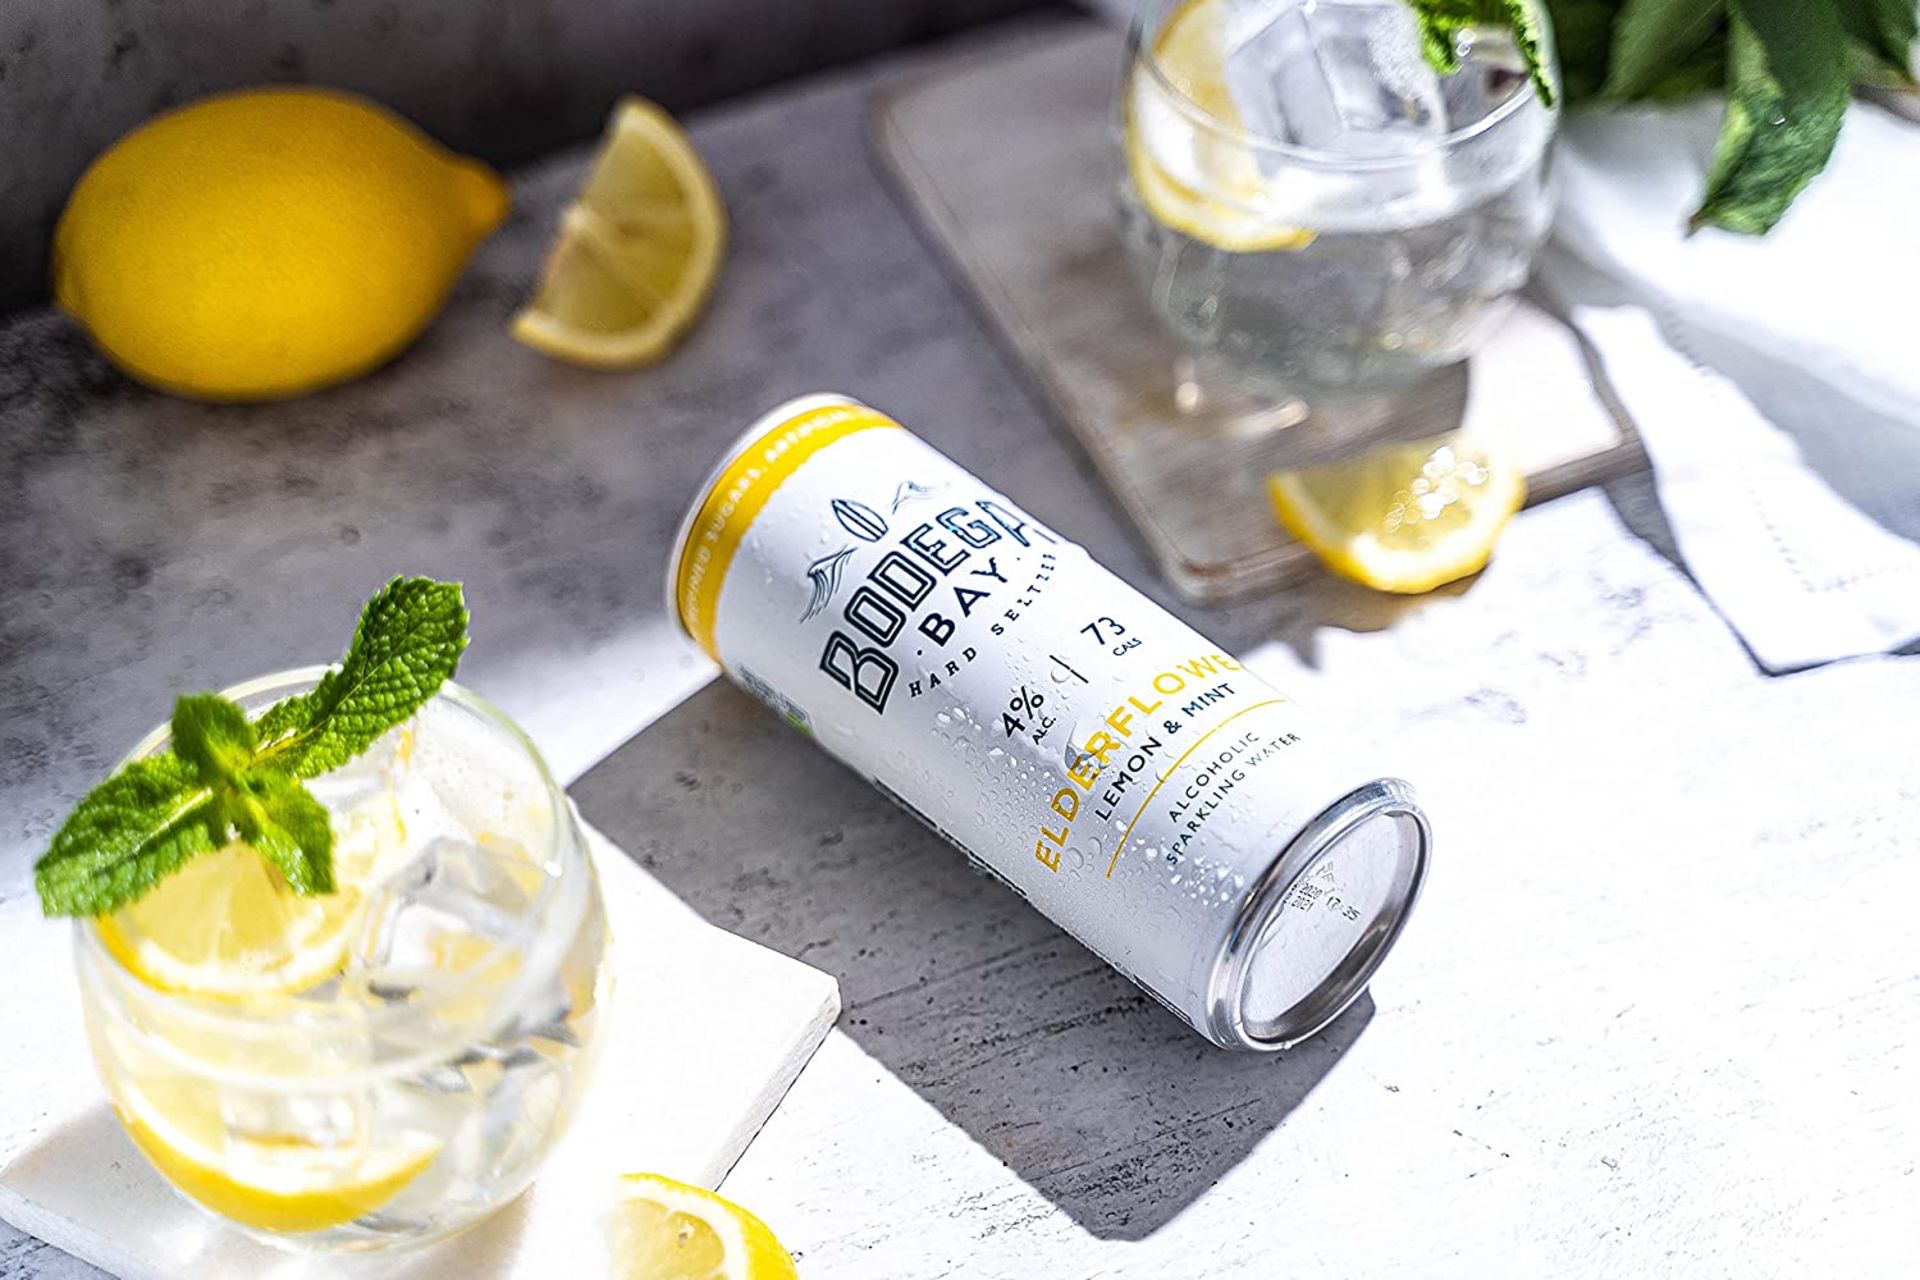 24 x Bodega Bay Hard Seltzer 250ml Alcoholic Sparkling Water Drinks - Elderflower Lemon & Mint - - Image 7 of 9